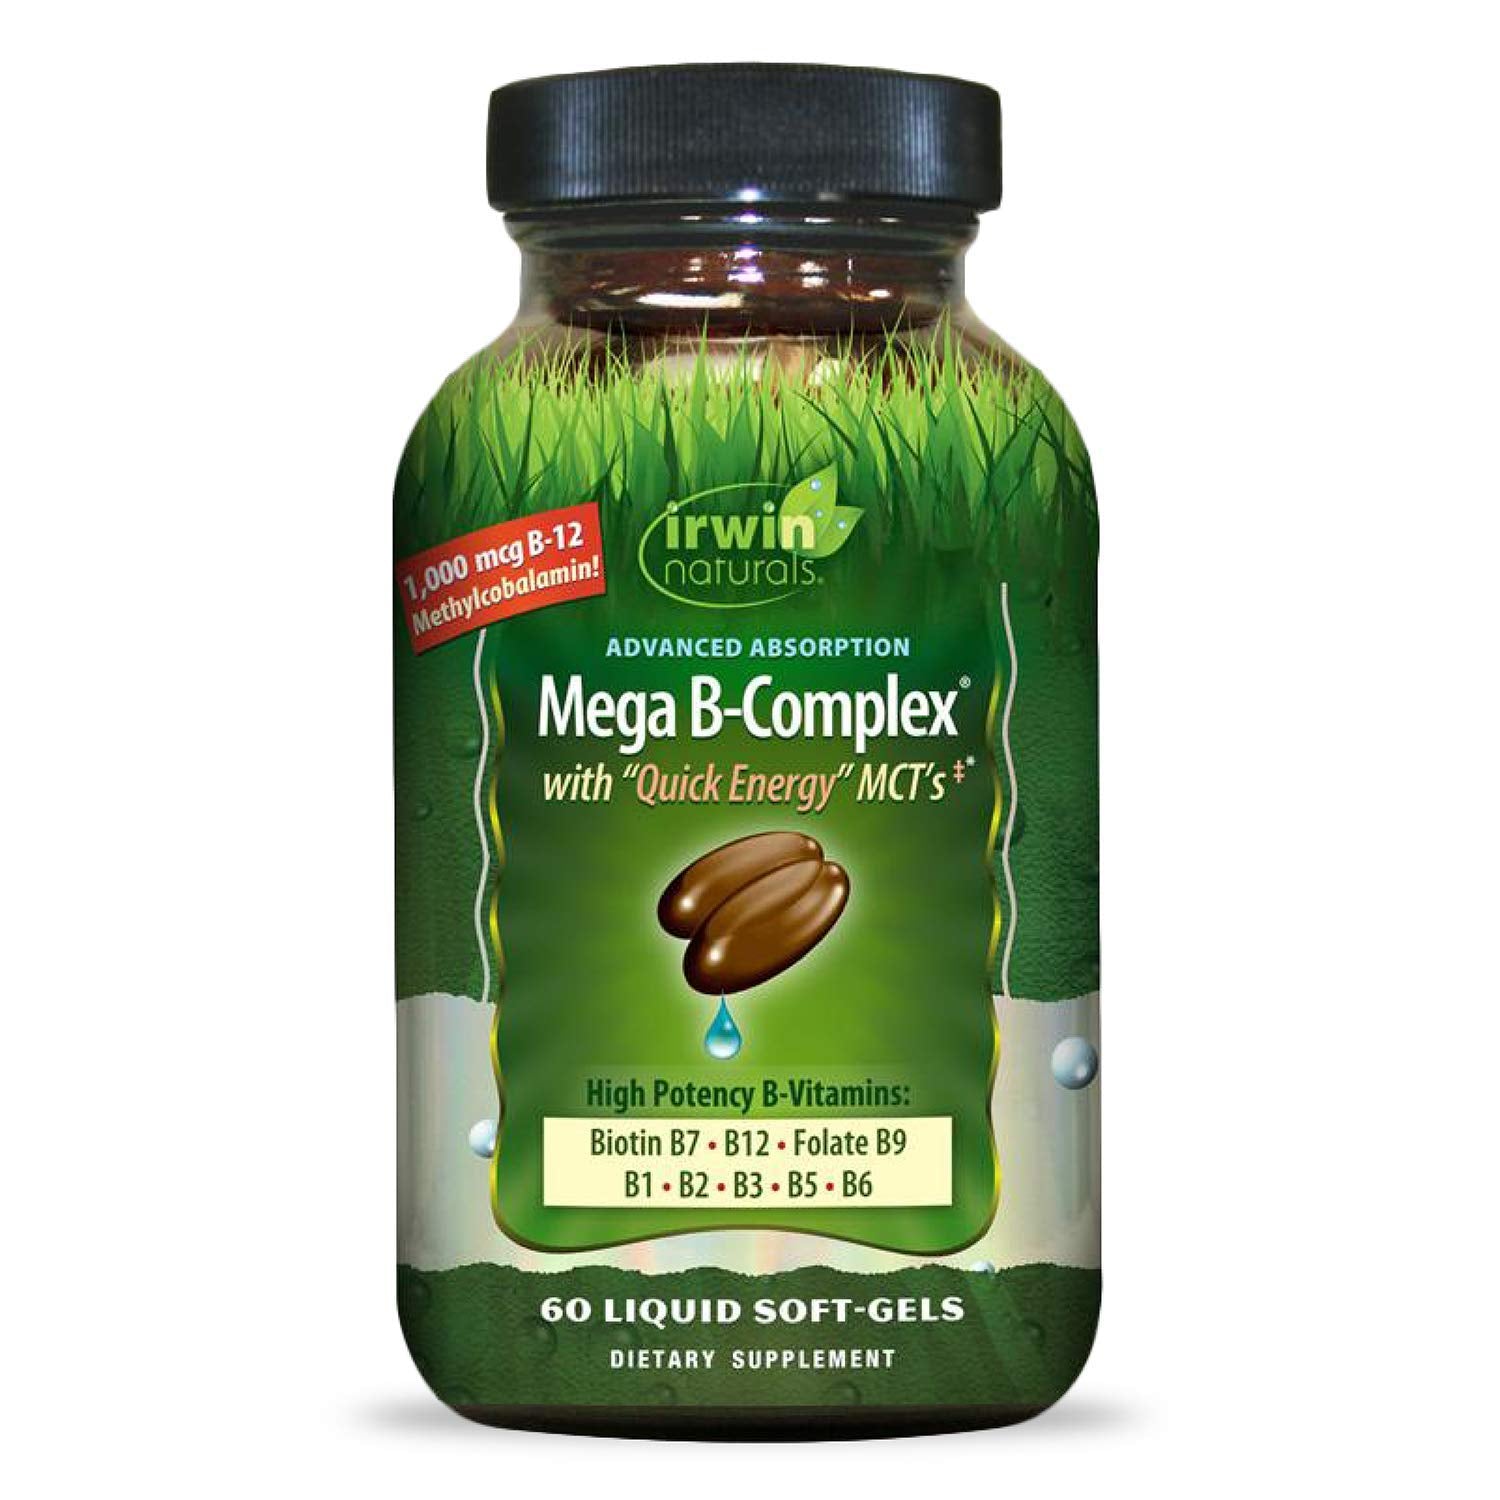 Irwin Naturals Mega-B Complex - 1, 000 Mcg B-12 - High Potency B-Vitamins With Quick Energy MCTs - 60 Liquid Softgels